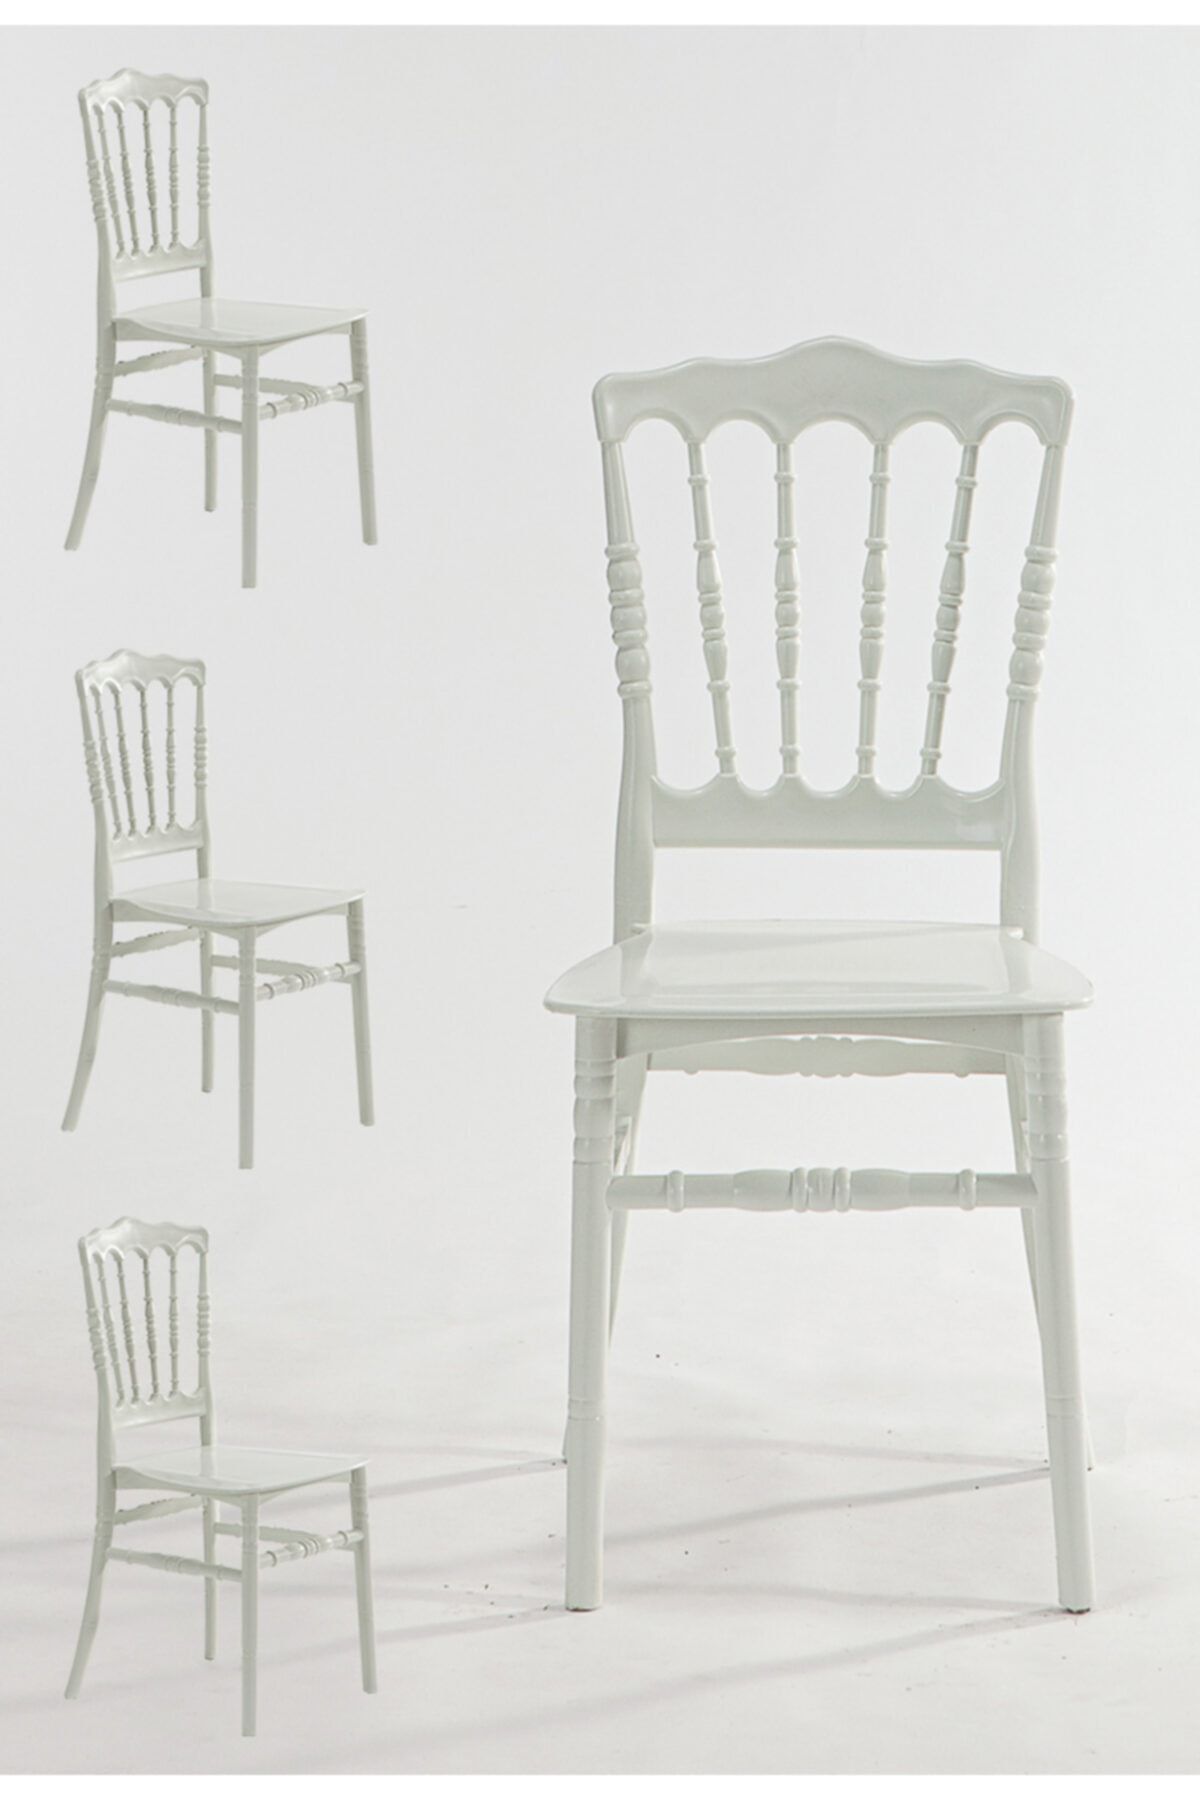 MOBETTO Home Mutfak Sandalyesi 4 Adet - Beyaz